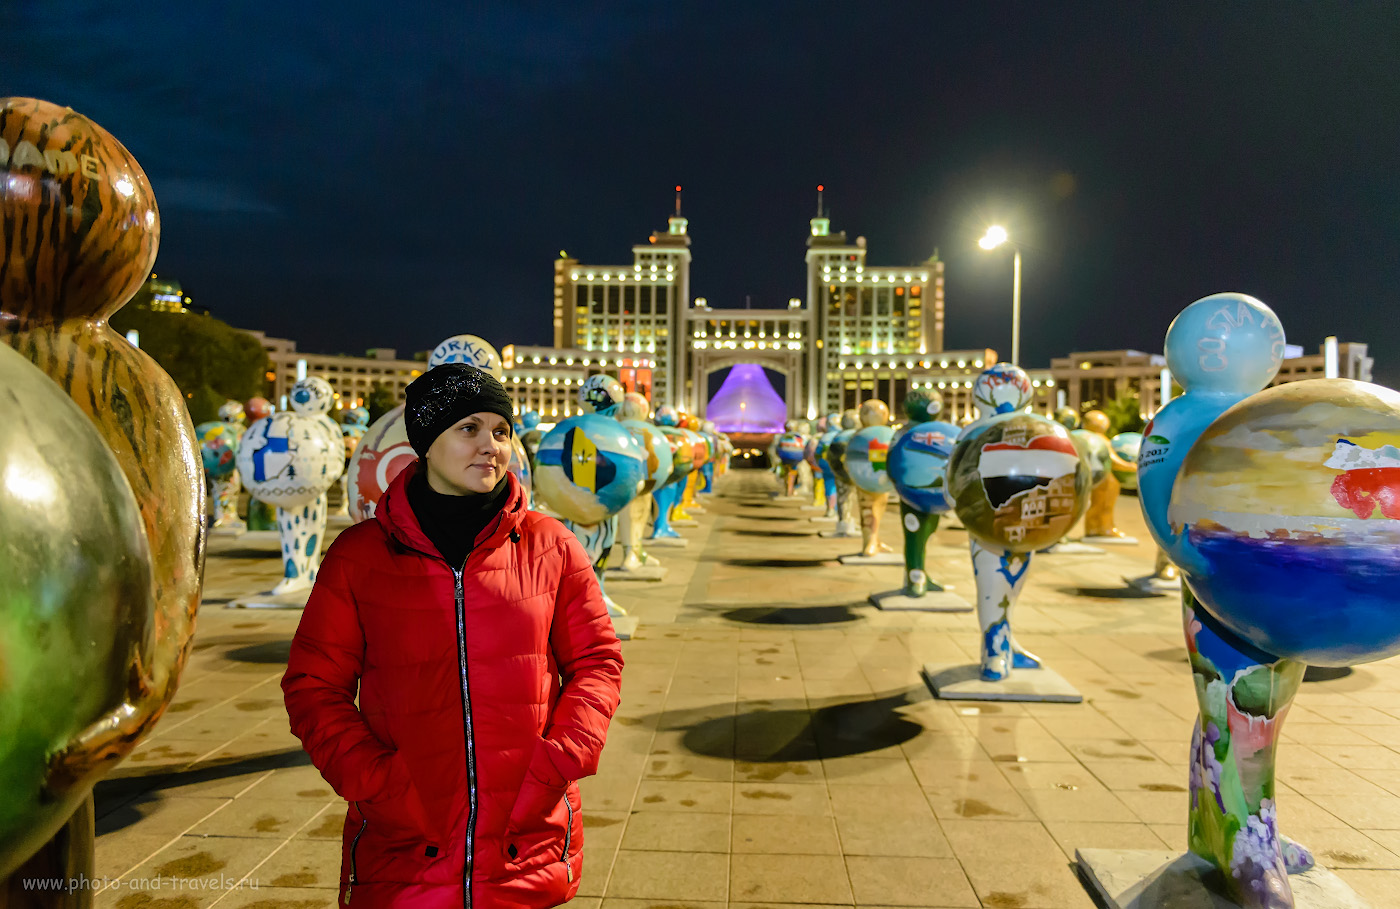 Фотография 17. Фигуры с глобусами на площади перед зданием «КазМунайГаз». Отзывы о прогулке по Астане. Что посмотреть в столице Казахстана за несколько часов. 1/40, +1.33, 2.8, 6400, 27.